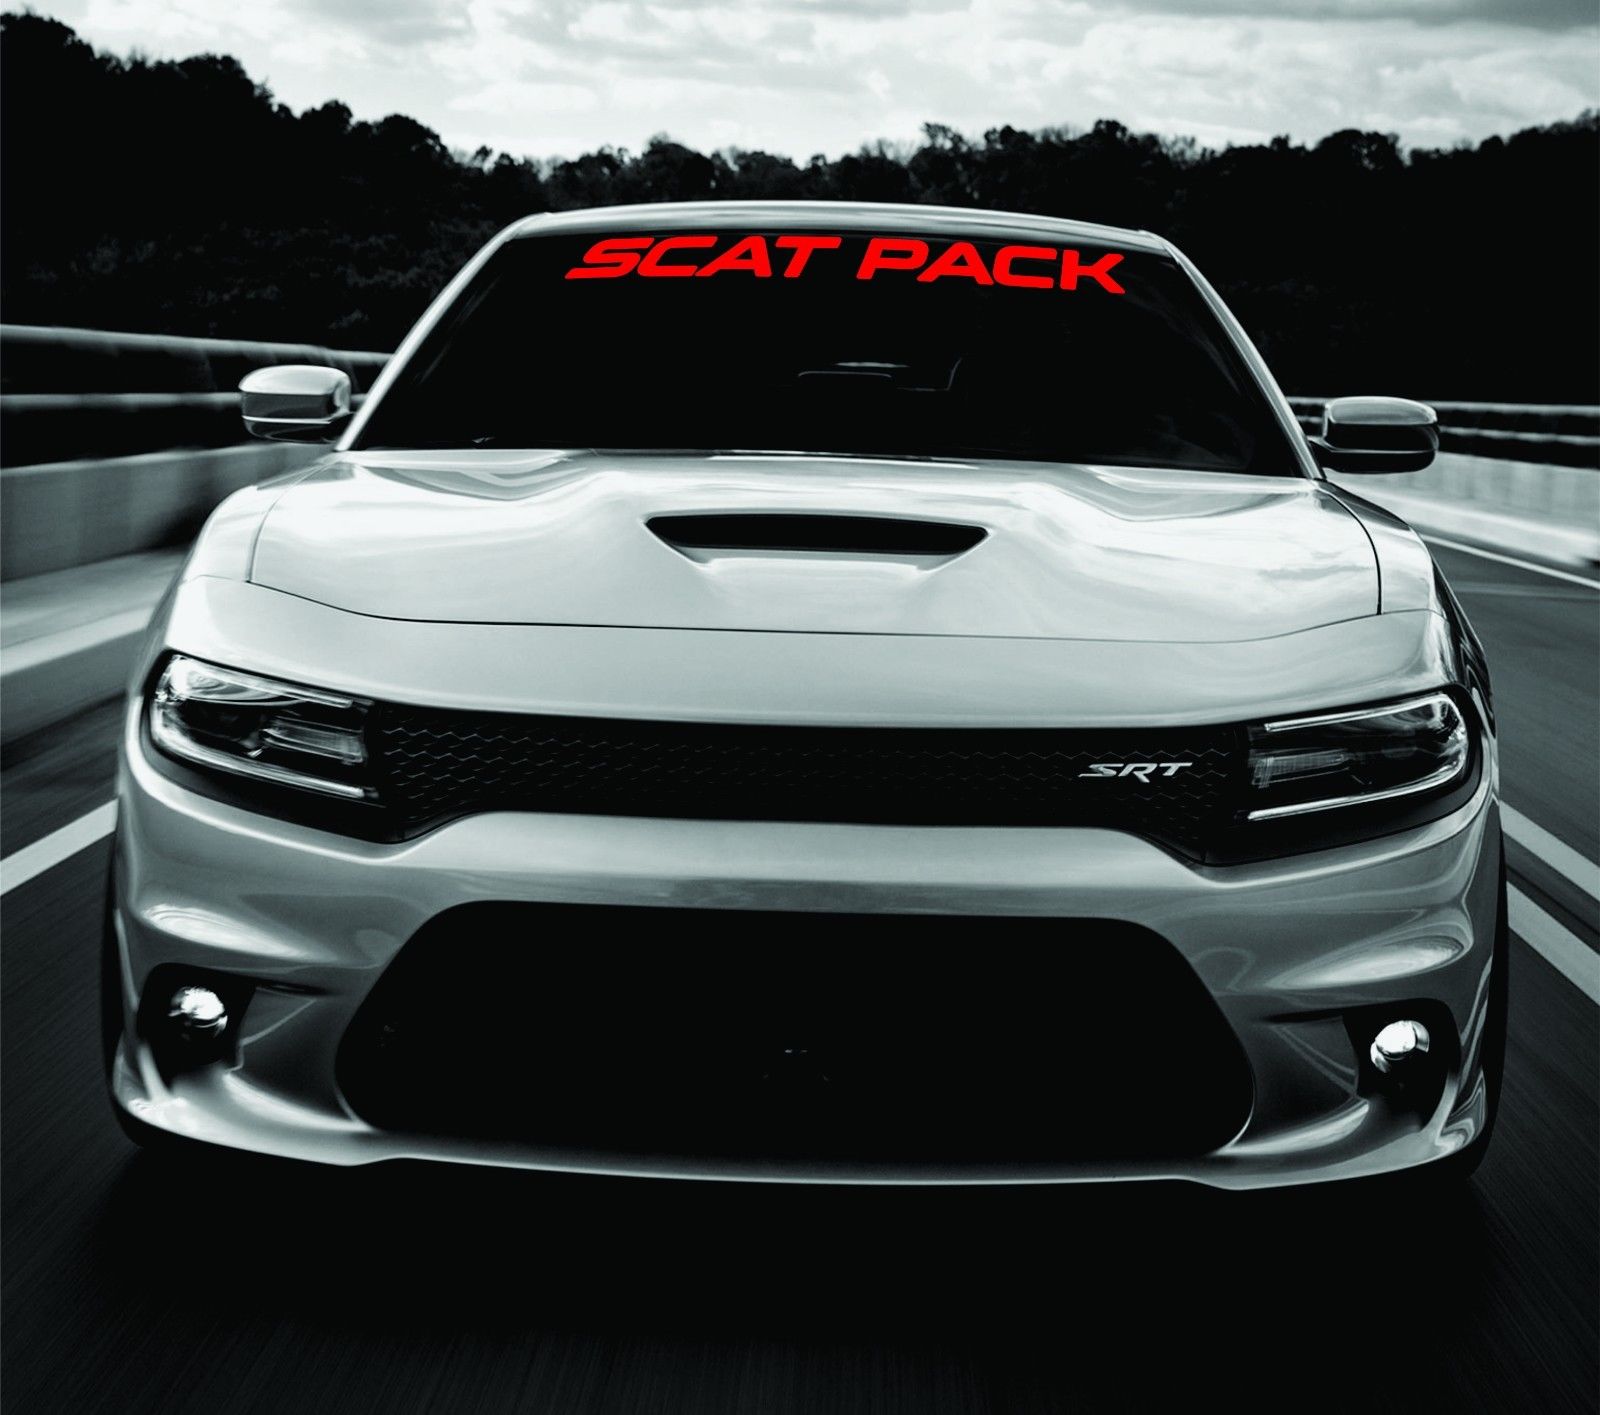 Dodge Ladegerät Scat Pack Windschutzscheibe Banner Aufkleber 2011-2017 SRT Mopar 392 Scatpack